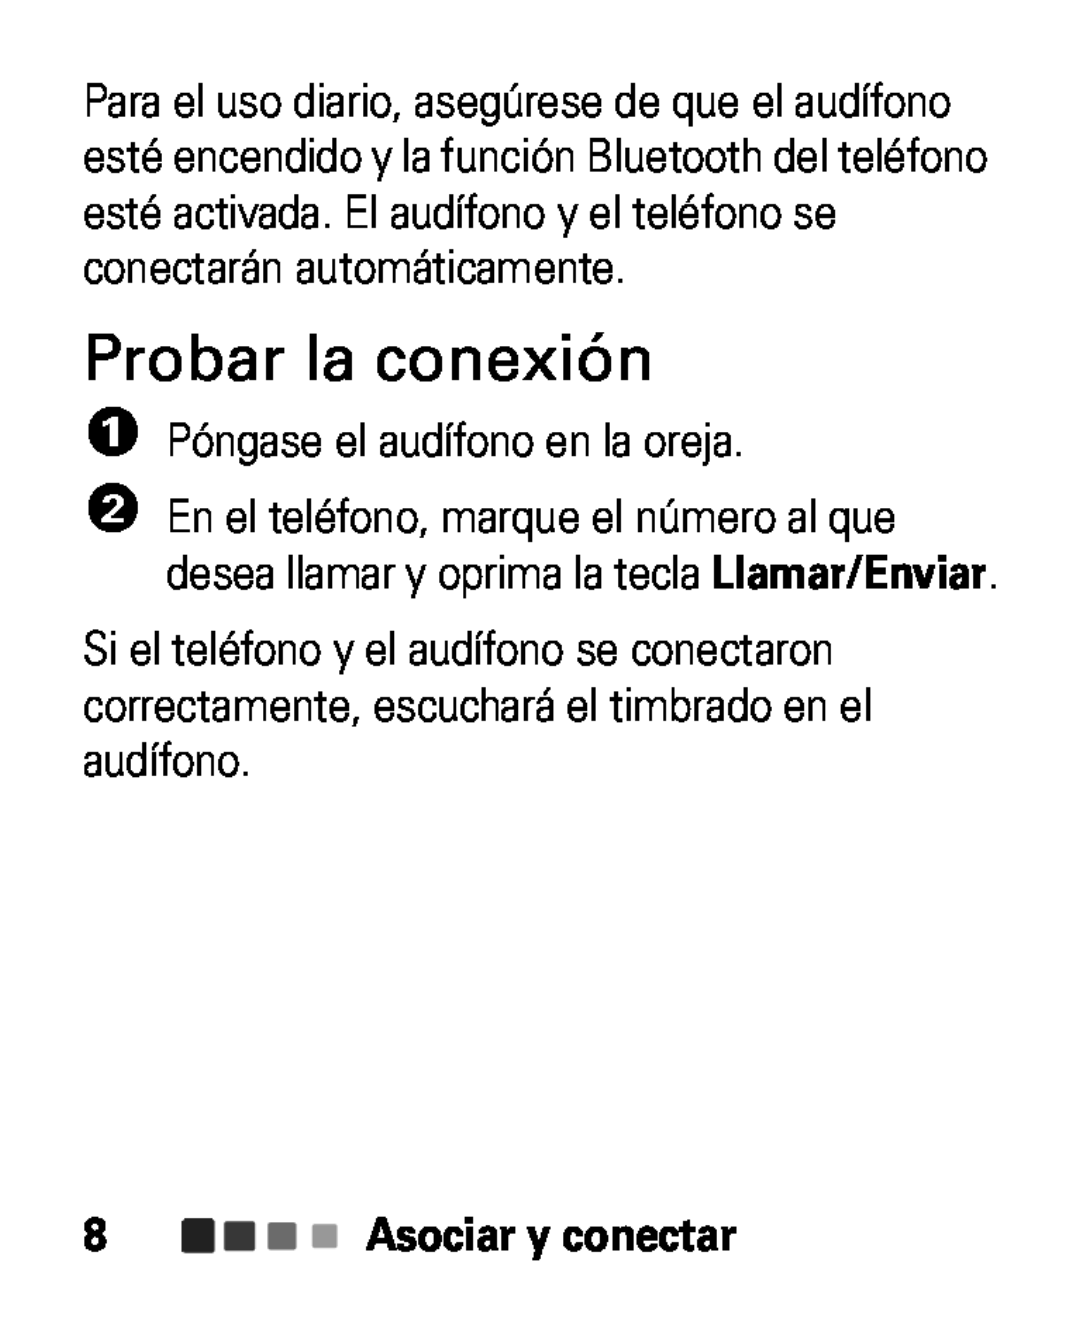 Motorola HK100 quick start Probar la conexión, 1Póngase el audífono en la oreja 